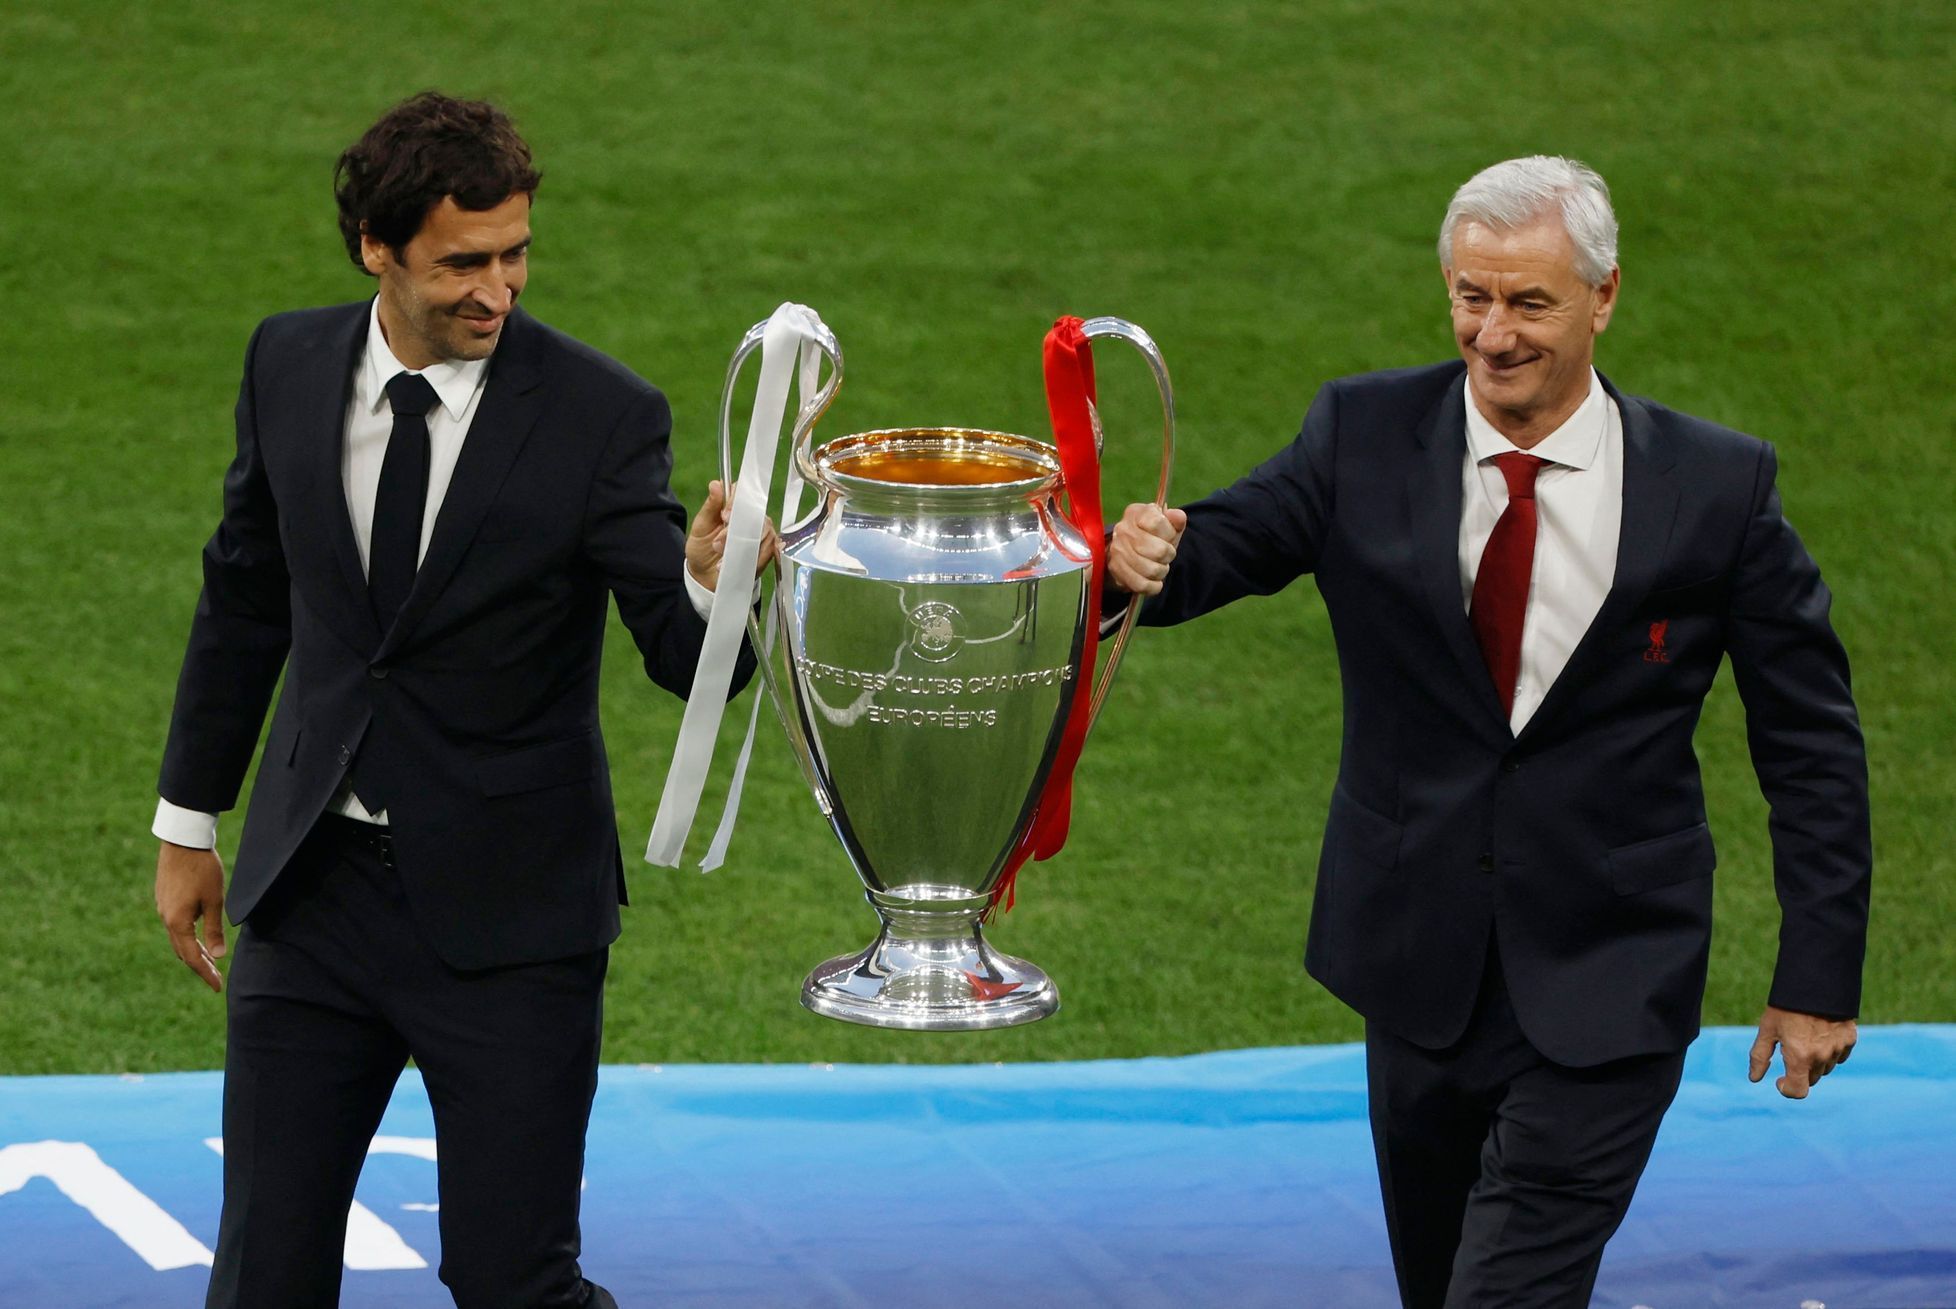 Real - Liverpool, finále Ligy mistrů 2022 (Raúl González a Ian Rush)